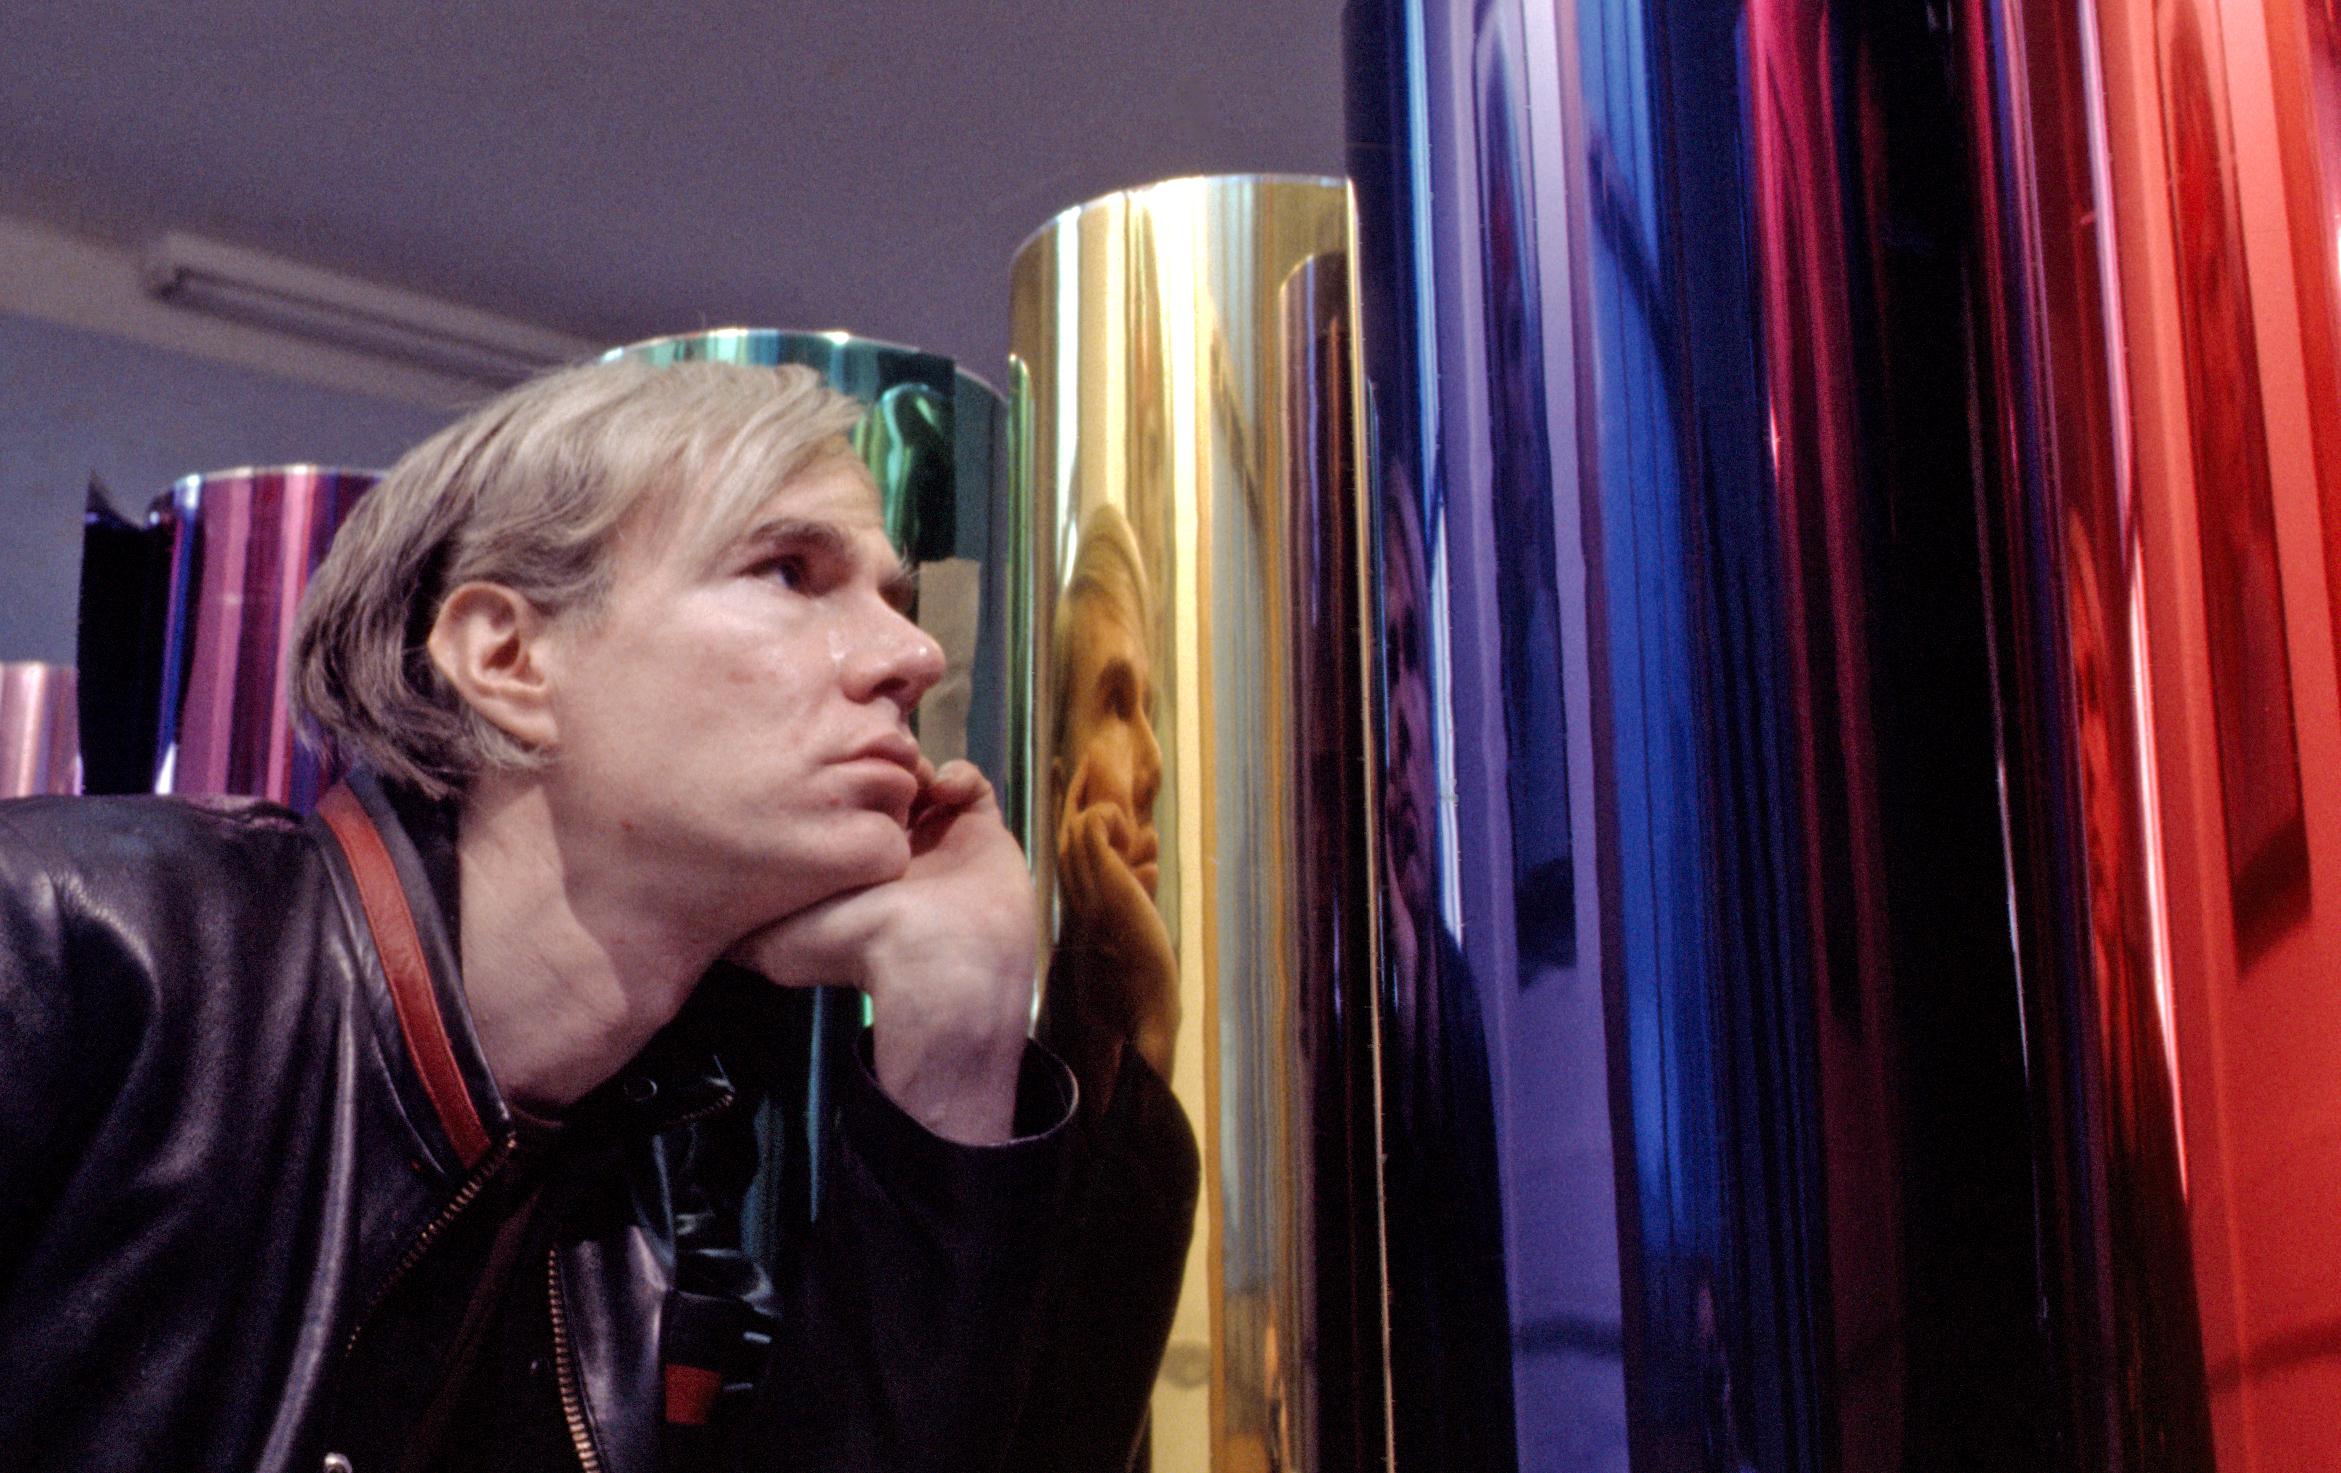 L'artiste Andy Warhol à l'usine, portrait en couleur de 43,18 x 55,9 cm, photographie d'exposition - Photograph de Jack Mitchell